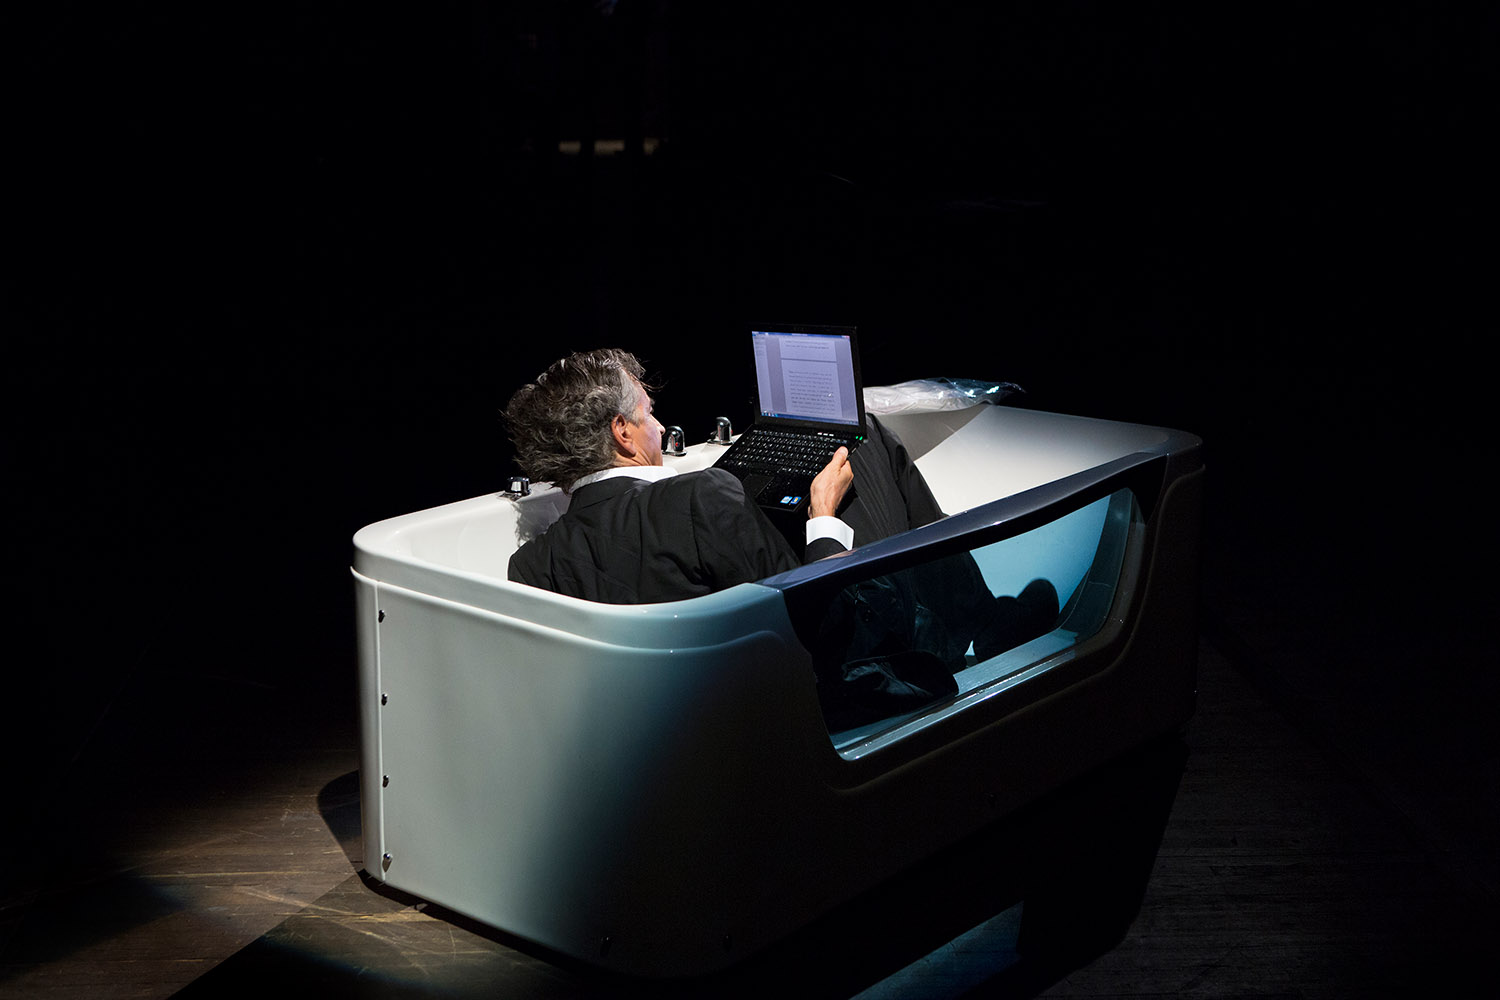 Bernard-Henri Lévy interprète la scène de la baignoire issue de sa pièce « Hôtel Europe » à l'Opéra d'Odessa. Dans une baignoire, BHL tient son ordinateur et lit un texte sur l'écran.